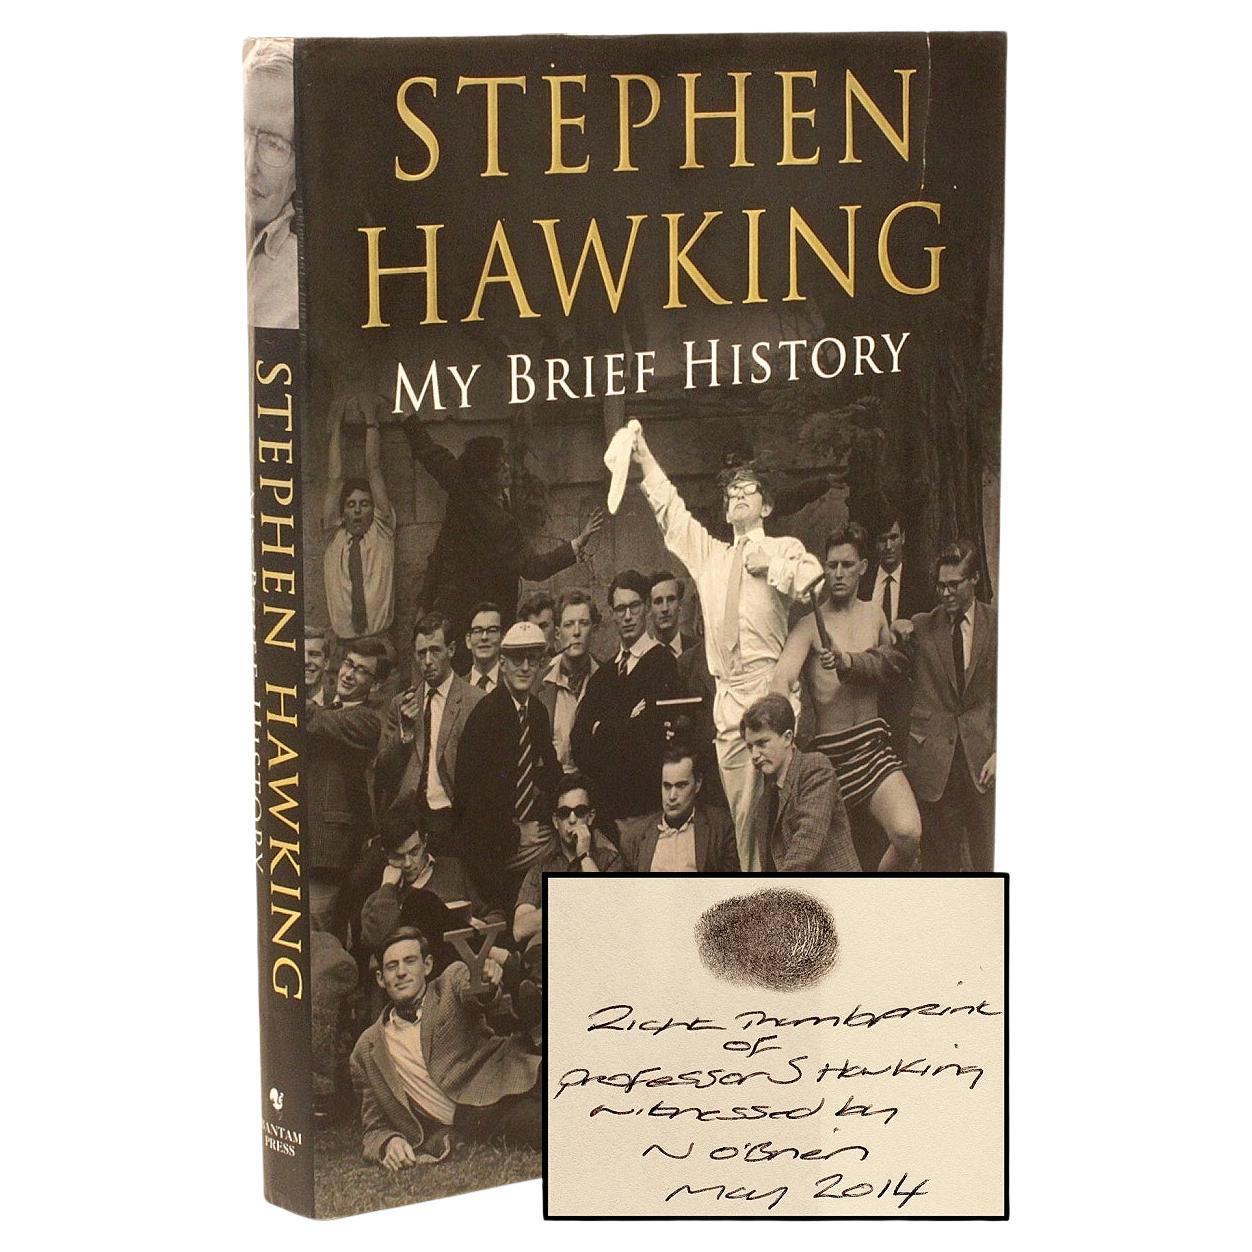 Stephen Hawking, My Brief History, 1ère édition signée avec l'estampe au pouce de Hawking